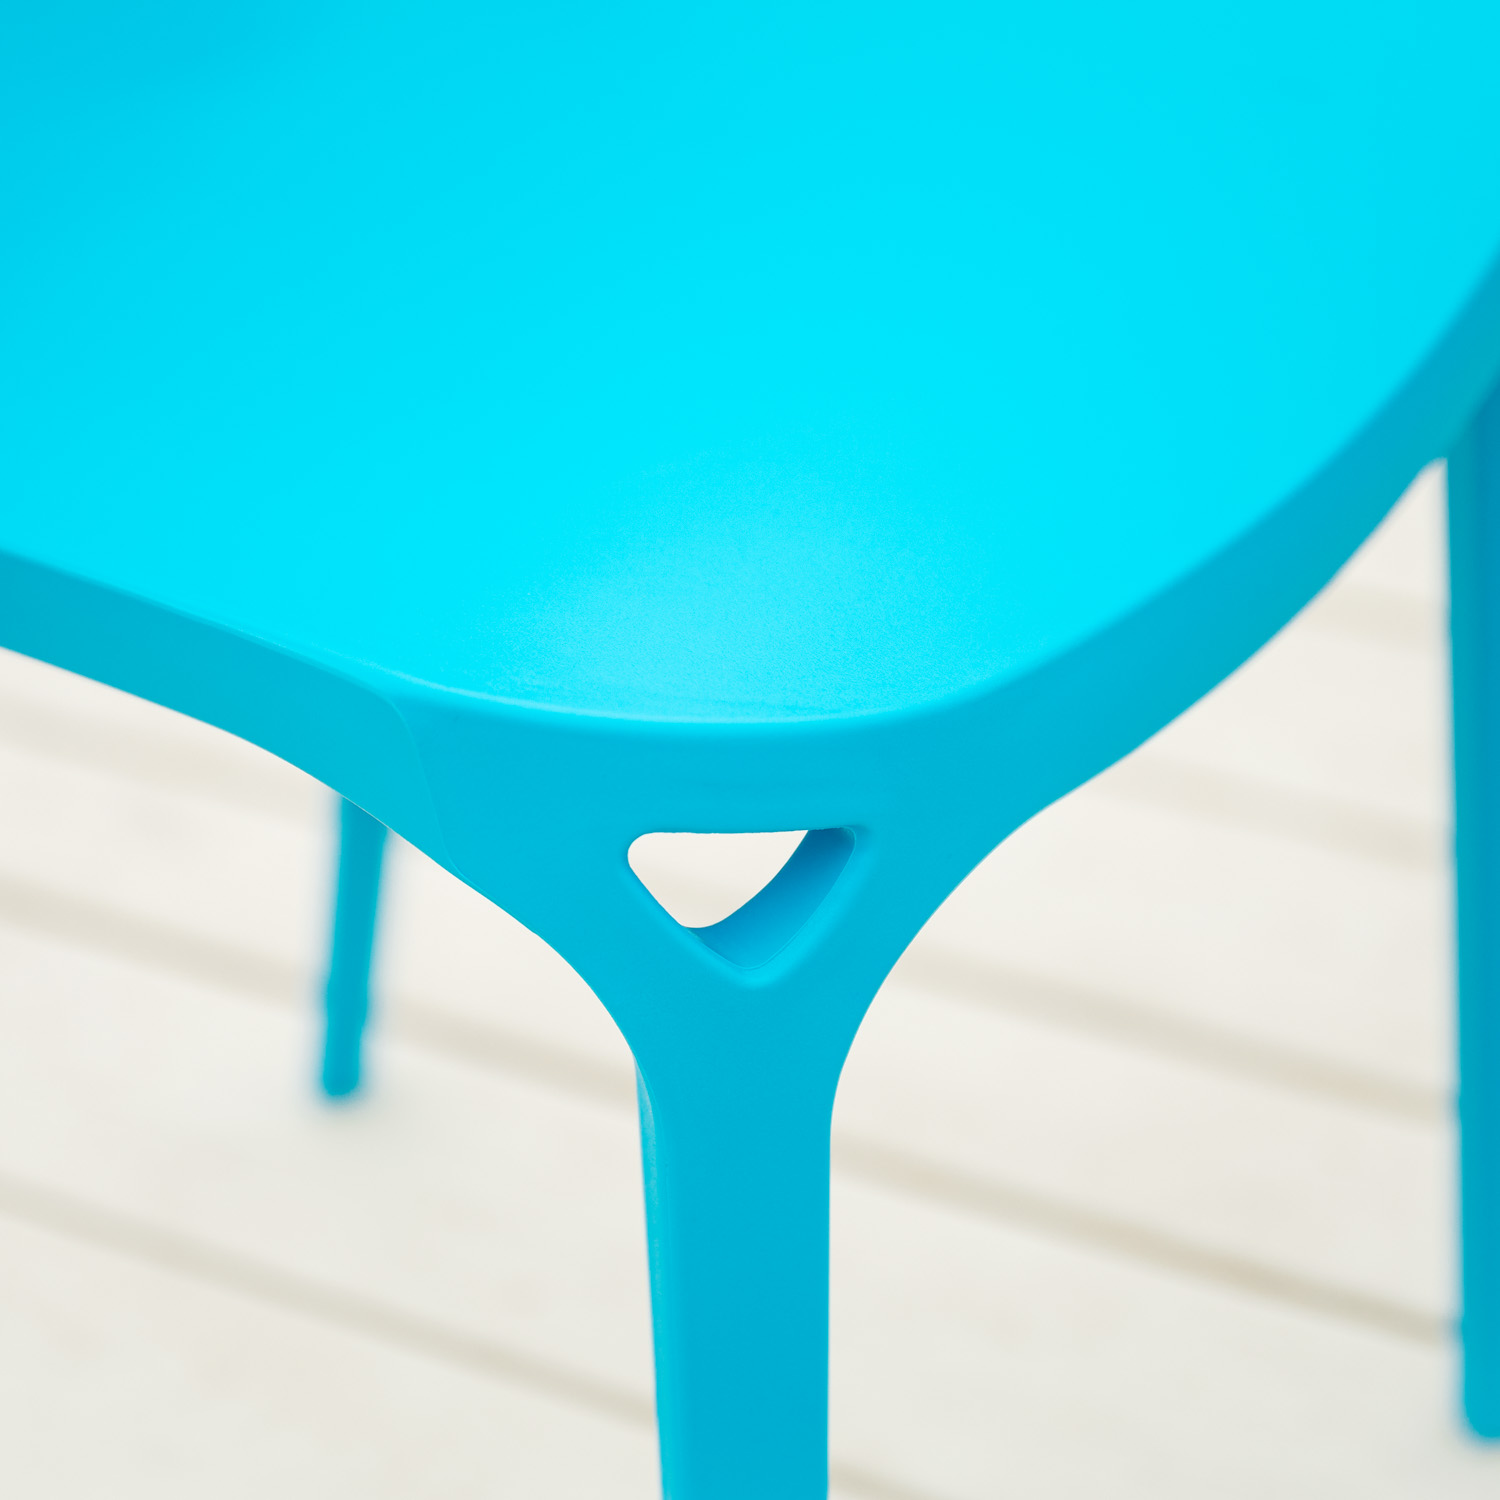 Chaise de jardin Lot de 4 Moderne Bleu Chaises design Plastique Chaises exterieur Chaises empilable Chaise de cuisine